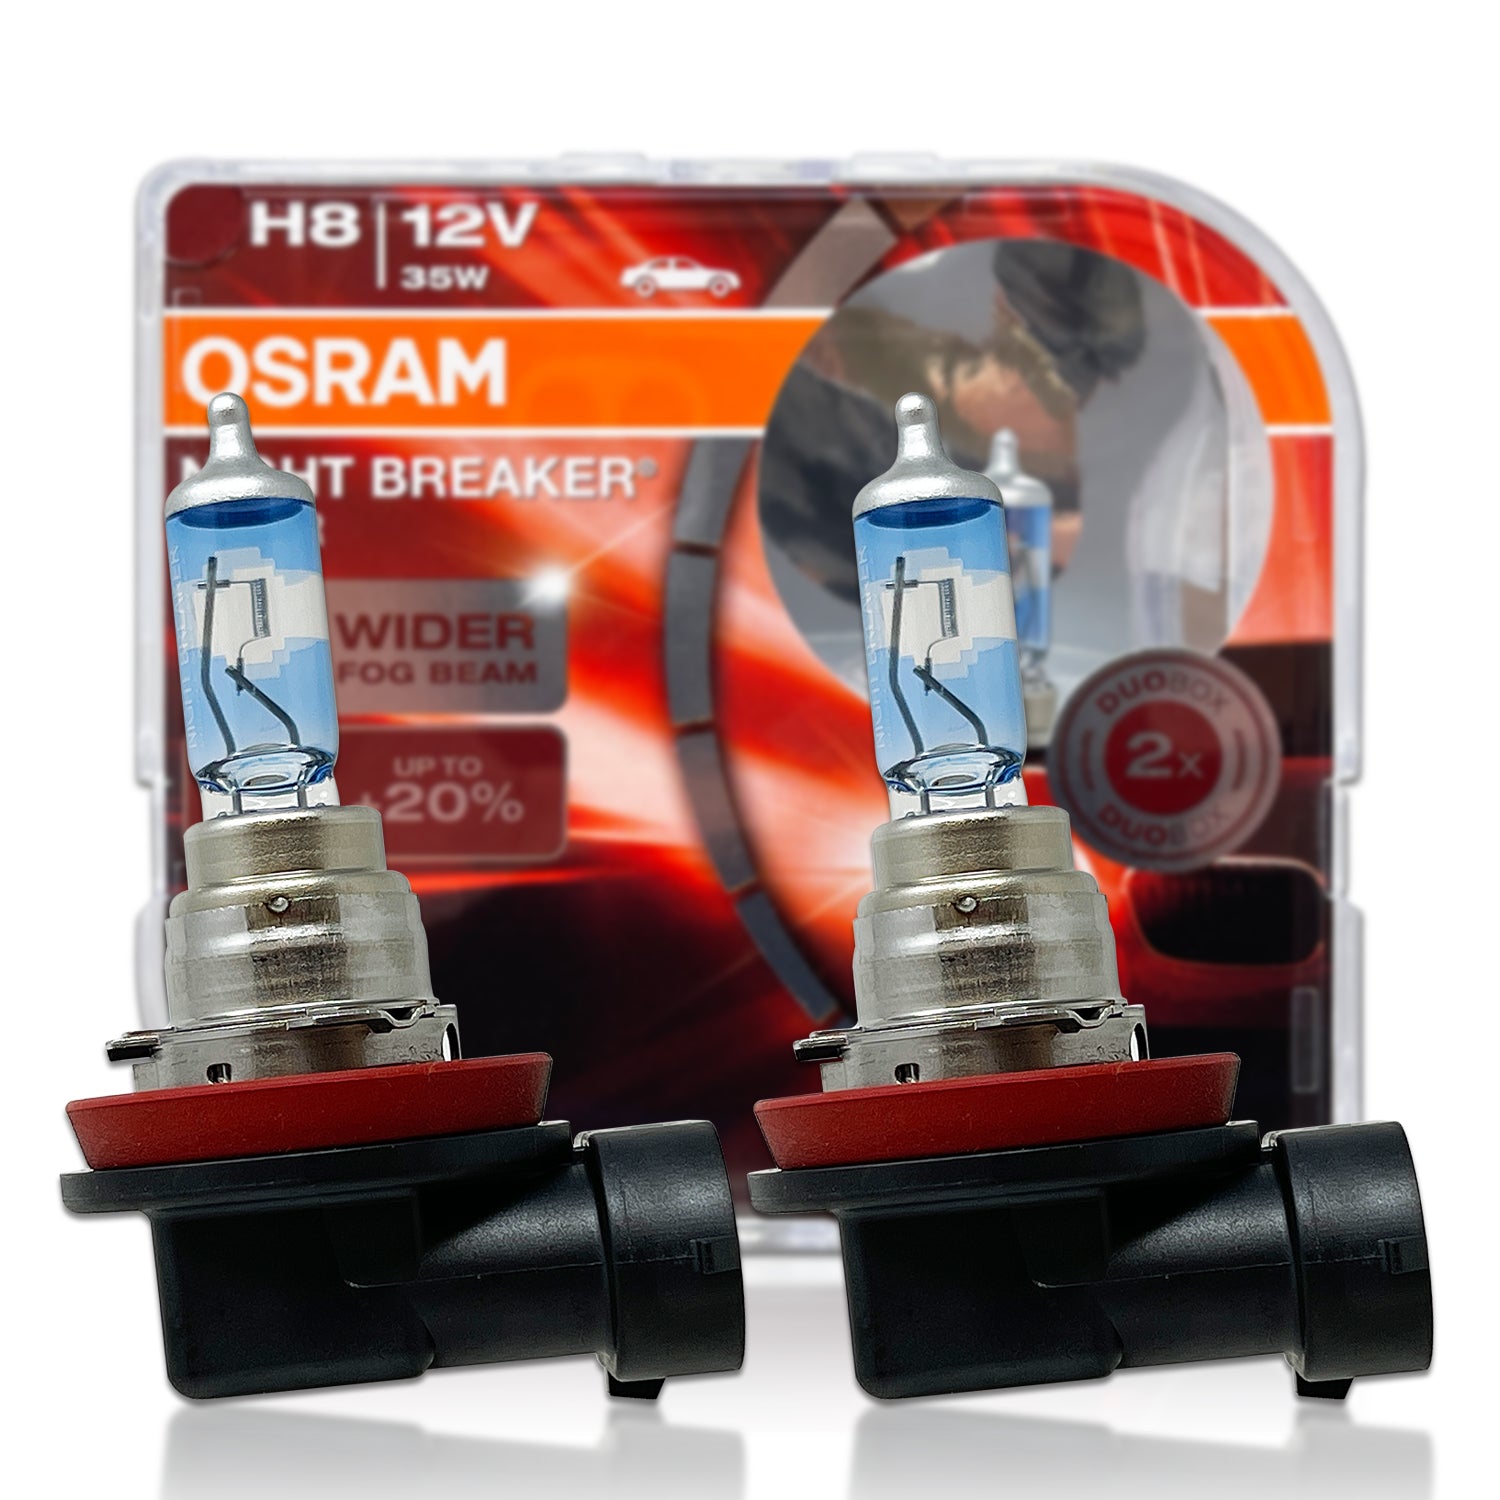 OSRAM 64212 - H8 35W 12V - Original Line High Performance Automotive B –  BulbAmerica